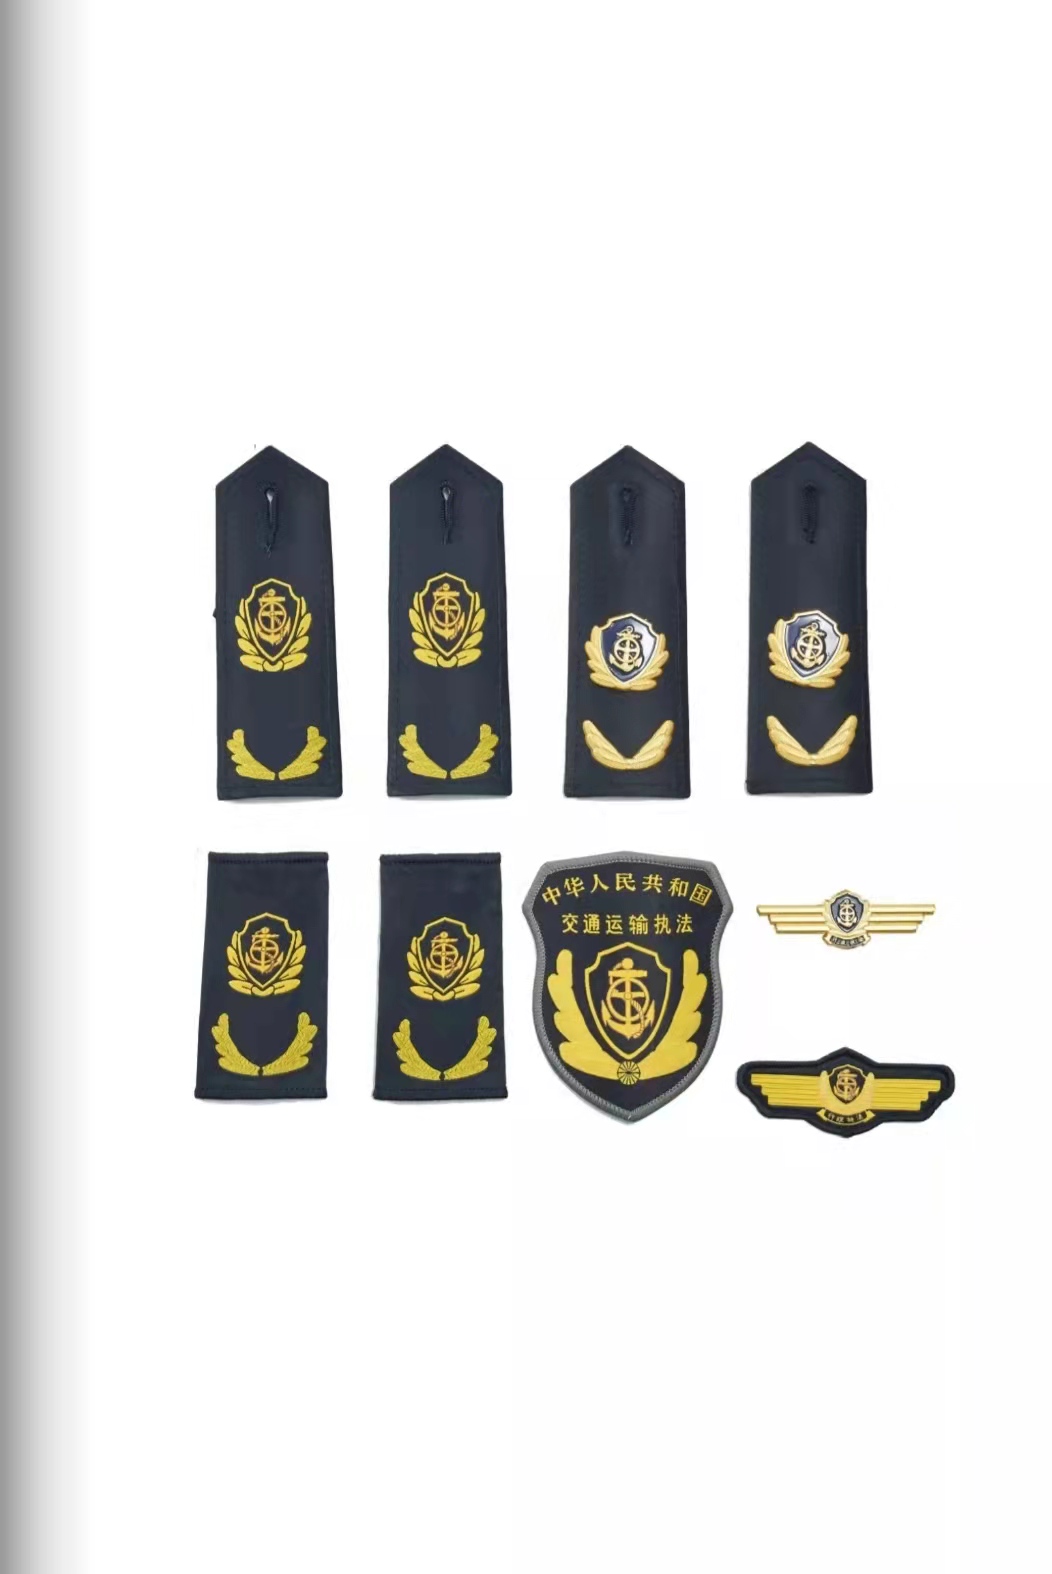 江西六部门统一交通运输执法服装标志